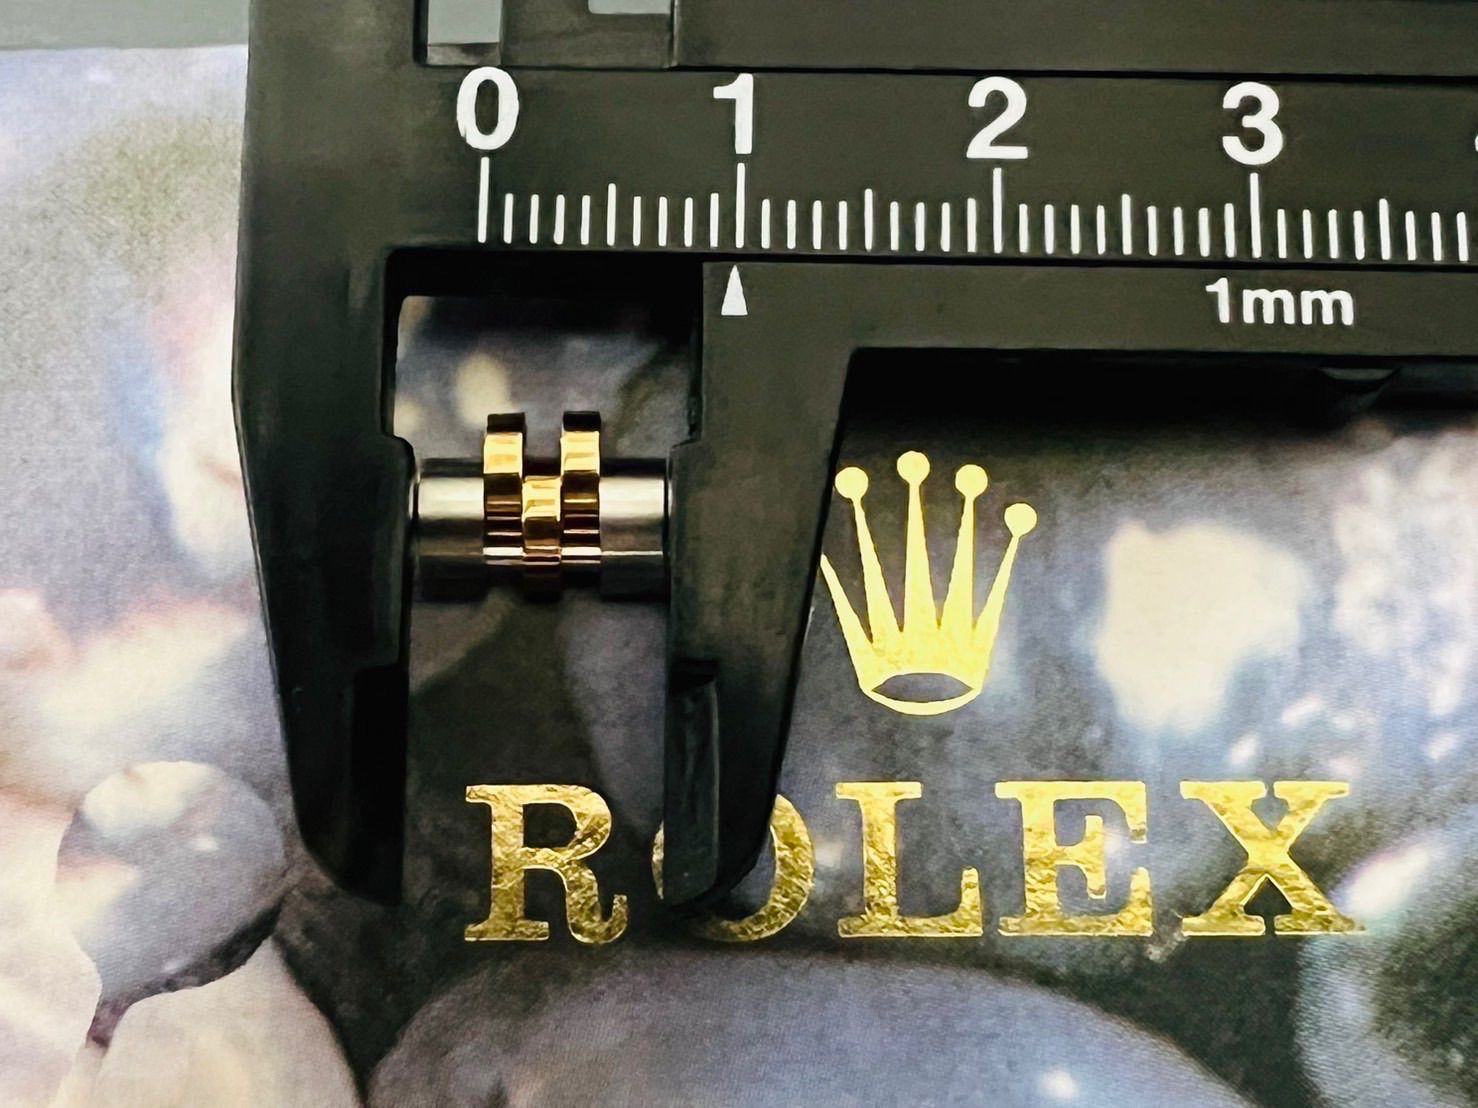 ロレックス 余り駒 1コマ SS コンビデイトジャスト 10mm - 腕時計 ...